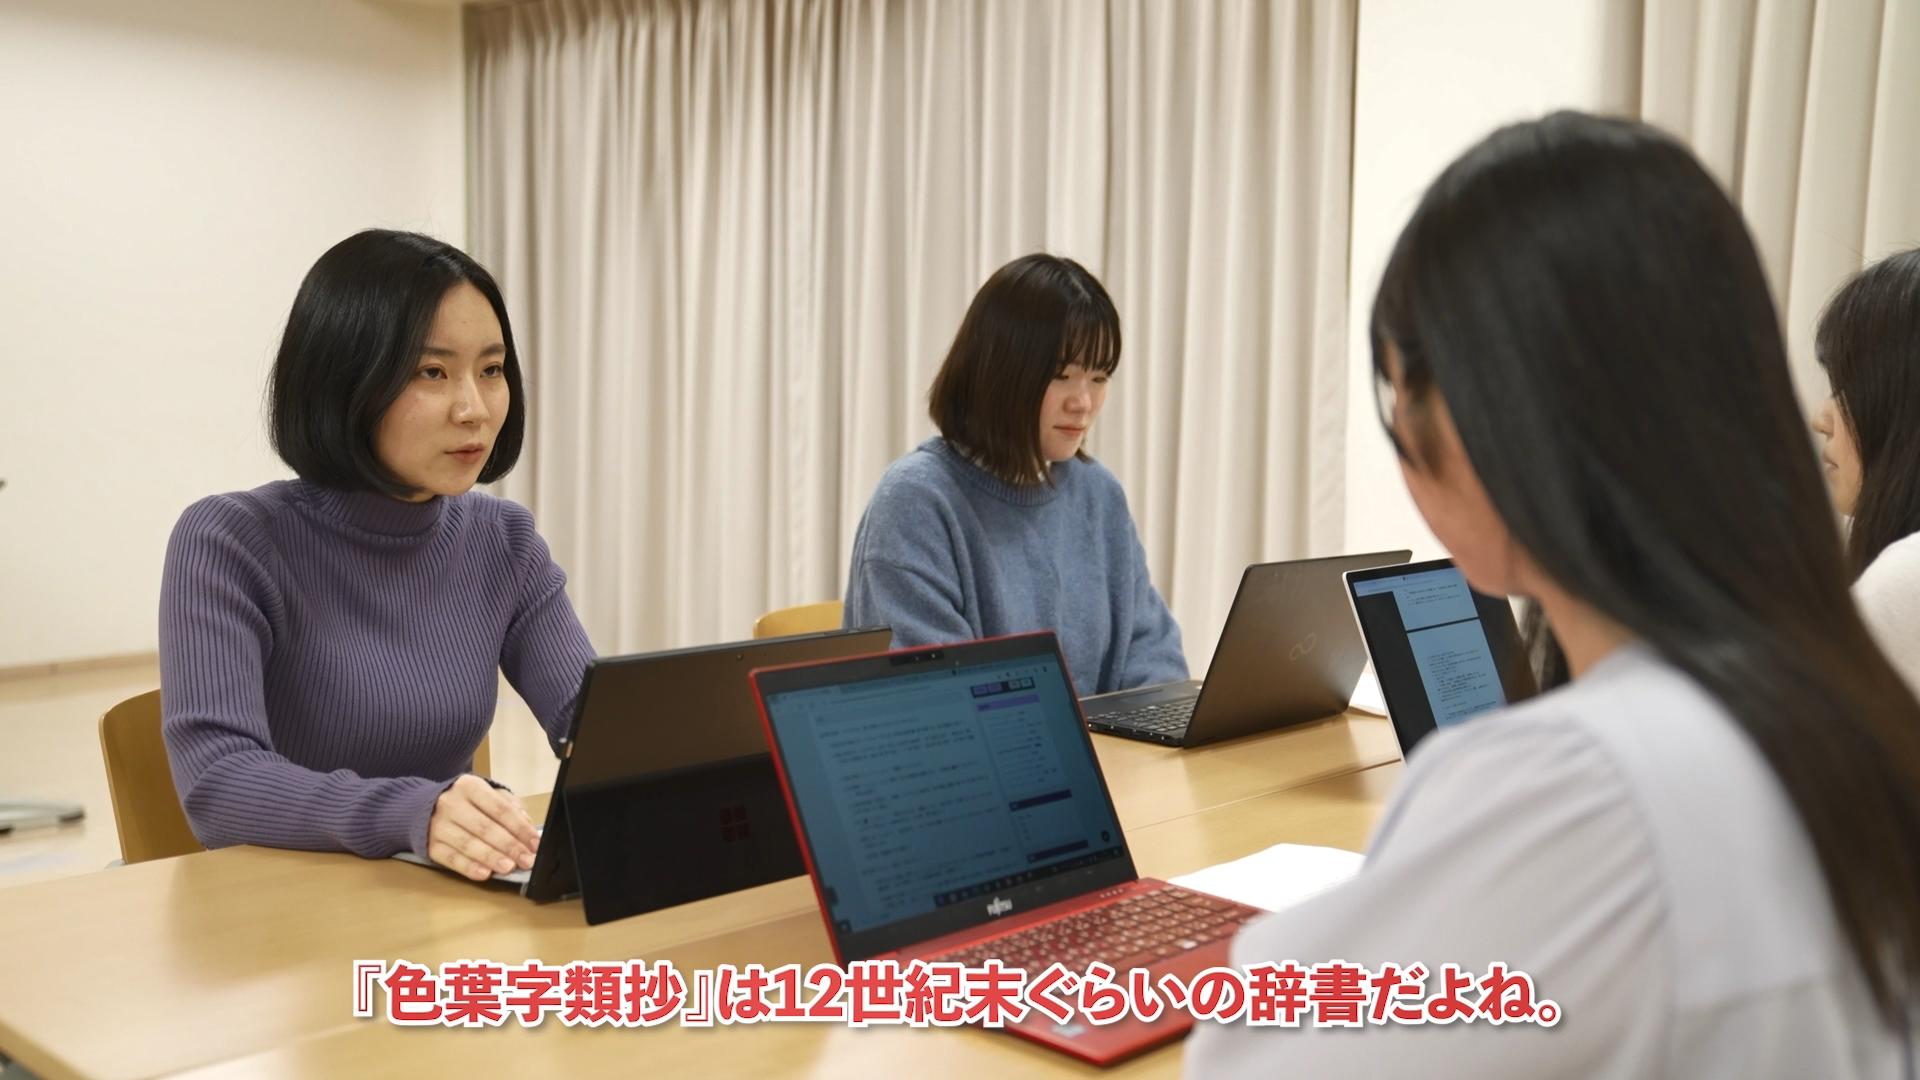 清泉女子大学日本語日本文学科の学生がデジタルコンテンツの使用方法を紹介するマニュアル動画を公開 -- JapanKnowledge公式Webサイトで紹介